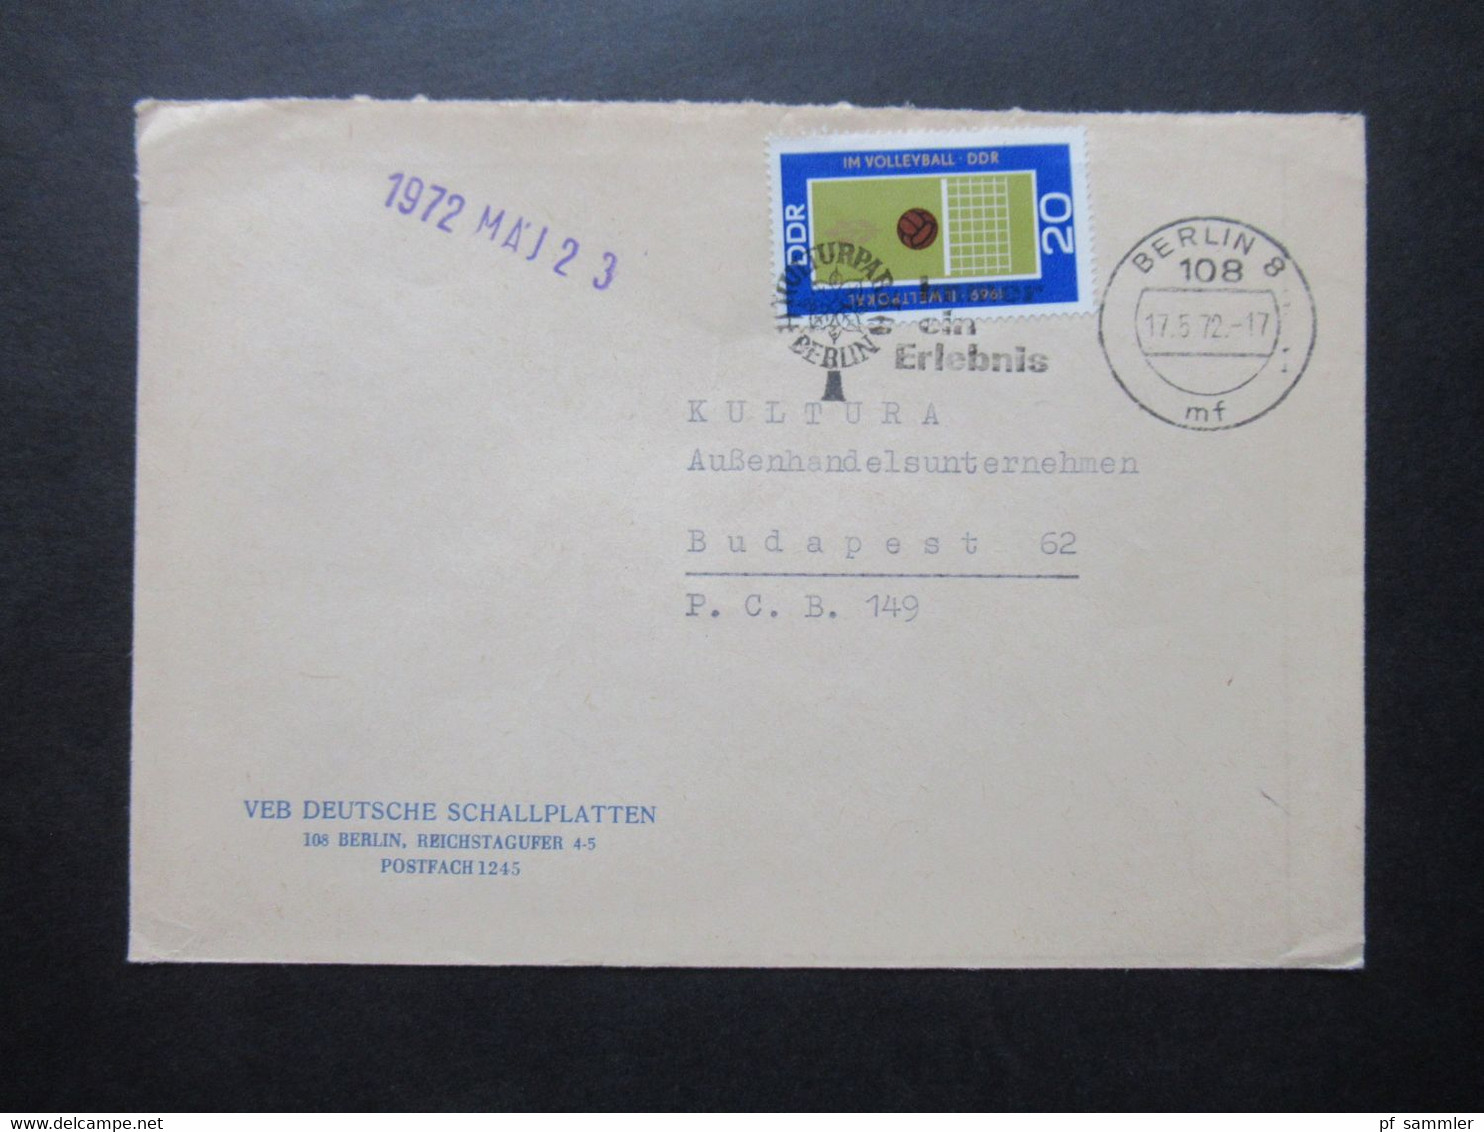 DDR 1972 2 Auslandsbriefe nach Ungarn 1x Luftpost Umschläge VEB Deutsche Schallplatten / Bereich Absatz usw.